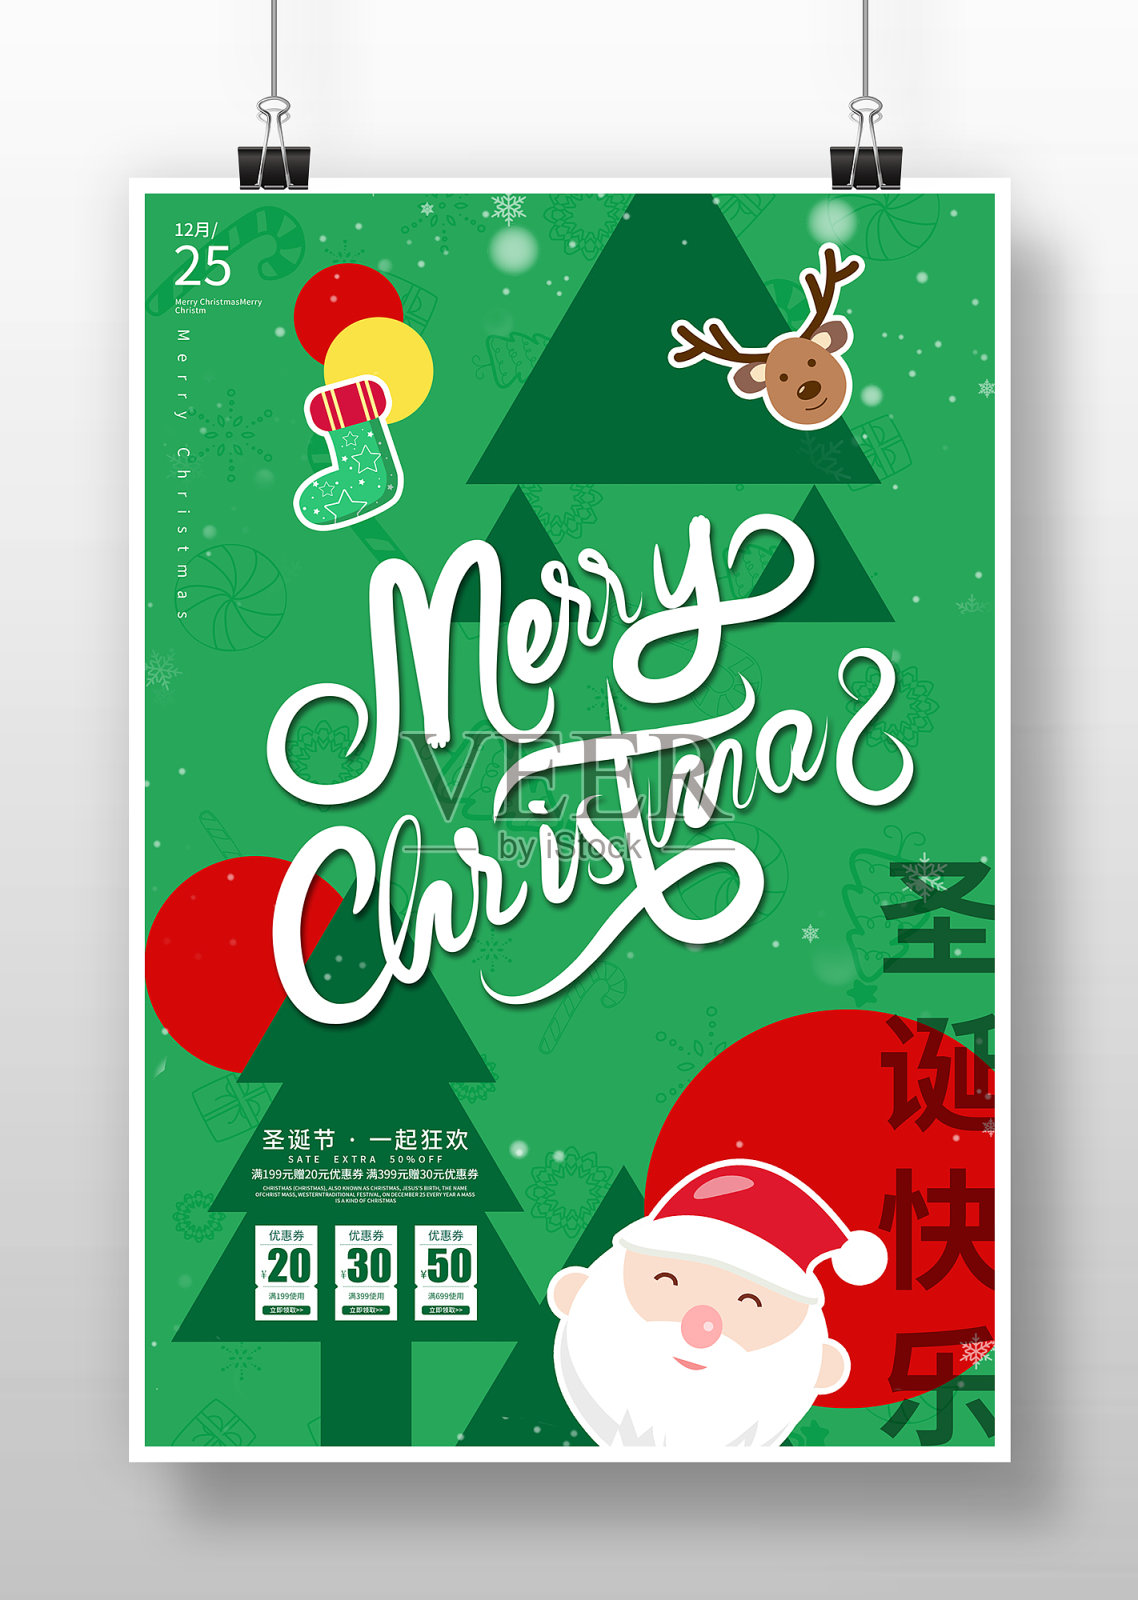 创意卡通风圣诞节促销海报设计模板素材